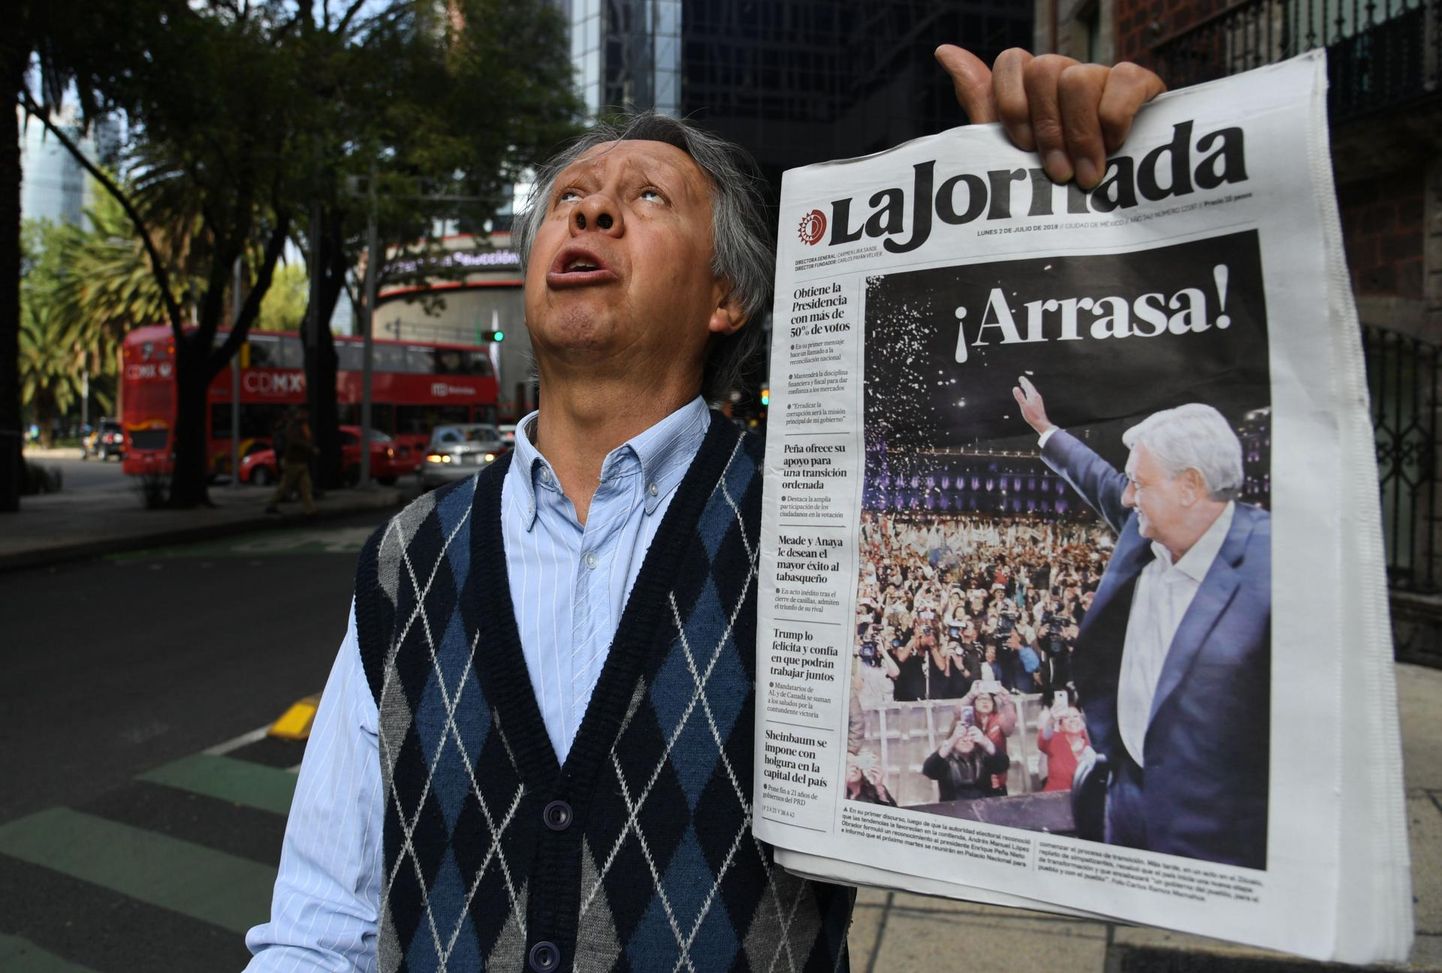 Pealinna México tänaval seisev mees hoiab käes tulevase presidendi Andrés Manuel López Obradori pildiga ajalehte. Vasakpopulisti edu hääletuskastide juures polnud mitte ainult tema võit, vaid vähemalt sama palju suurte parteide enda sepistatud kaotus.